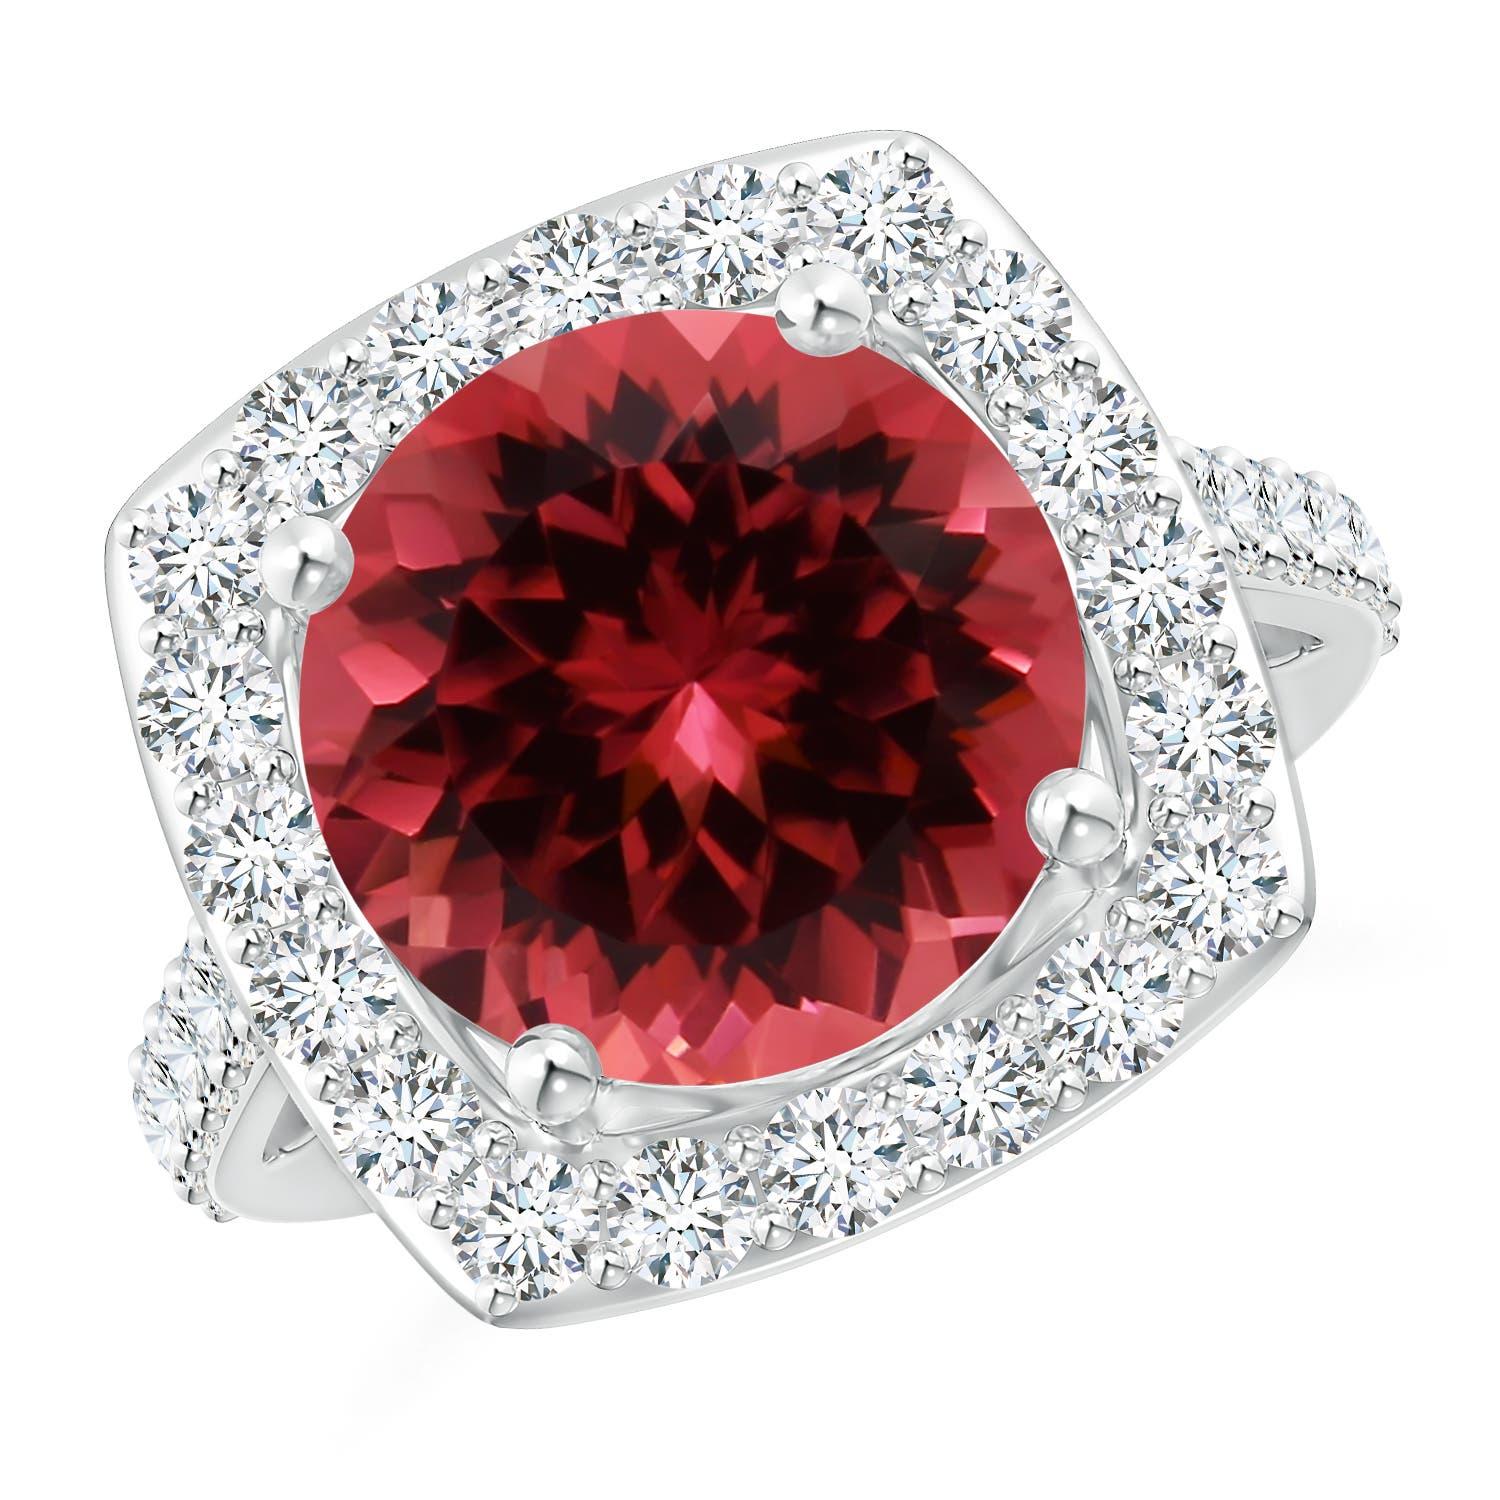 ANGARA GIA Certified 2.15ct Pink Tourmaline Diamond Halo Ring in 18K White Gold